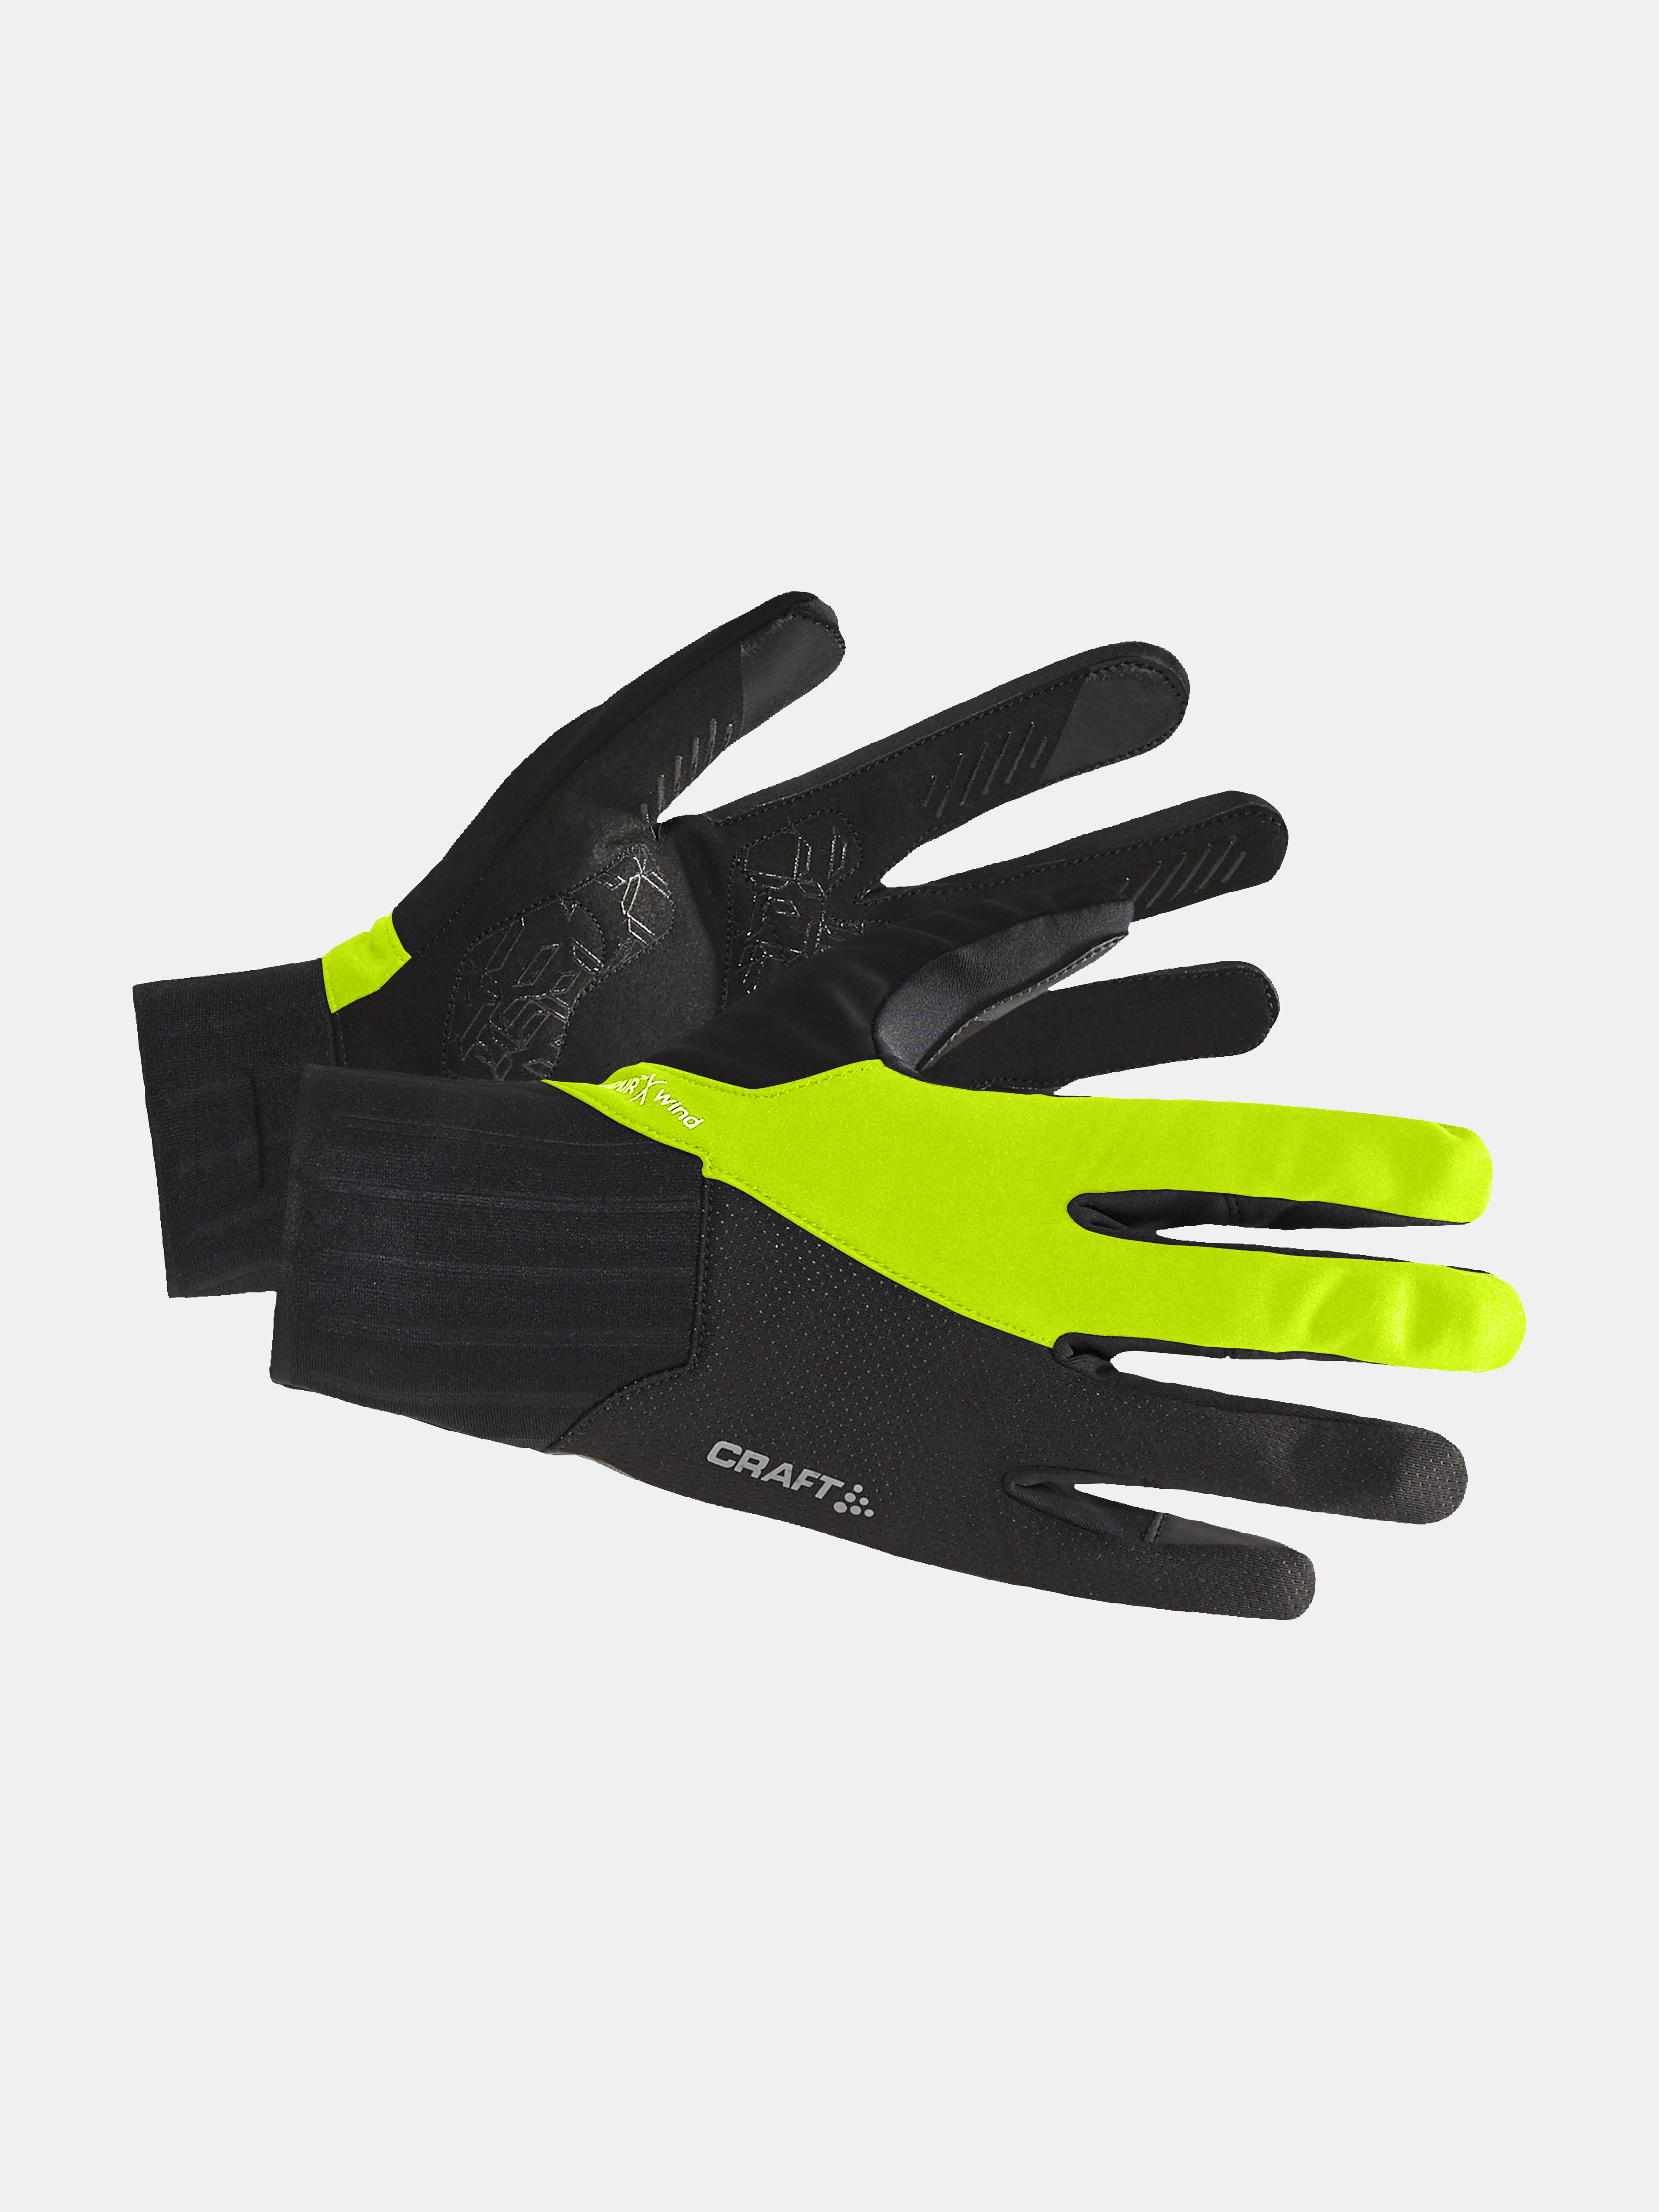 ADV SubZ All Weather Glove - Black | Craft Sportswear | Fahrradhandschuhe